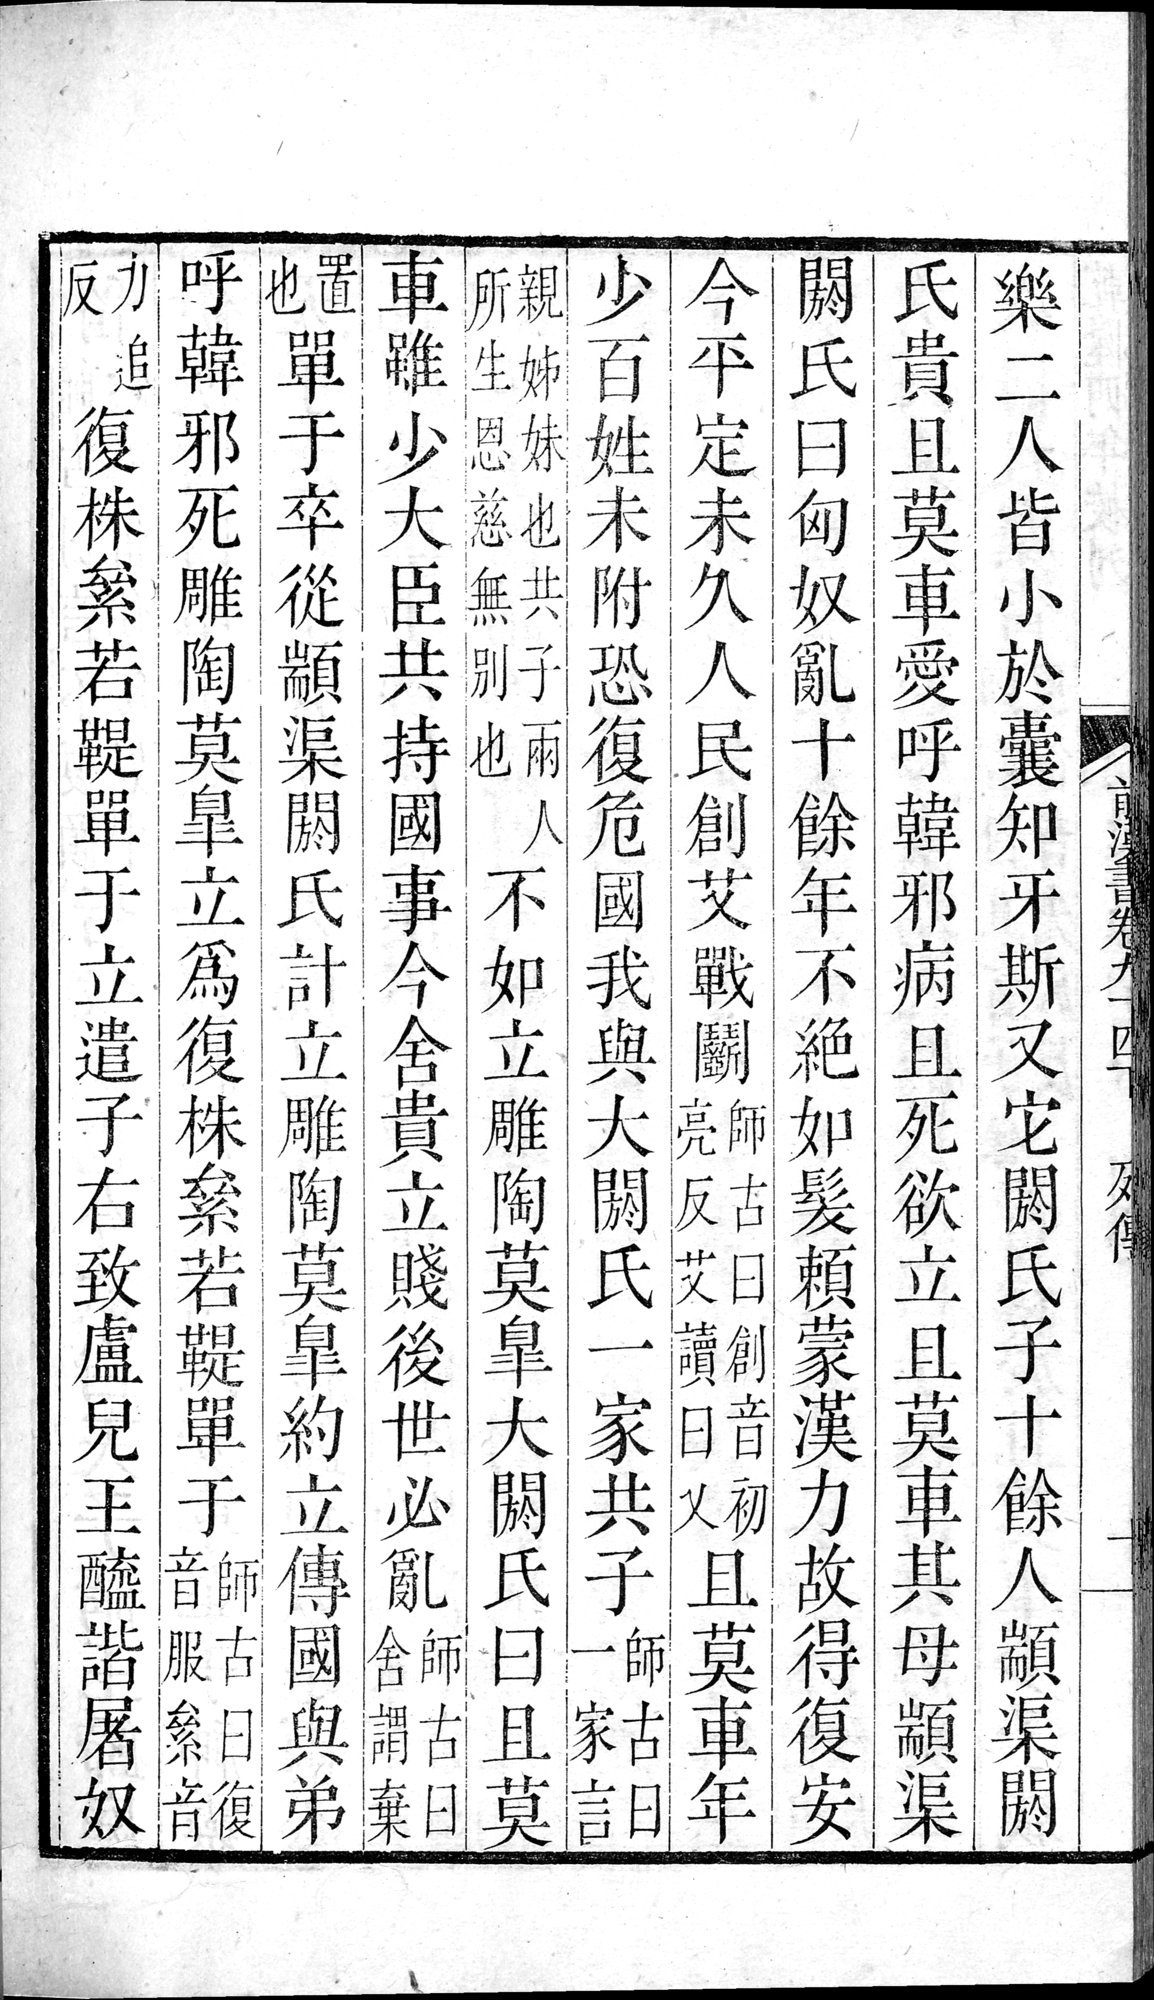 前漢書 : vol.94 bottom / Page 20 (Grayscale High Resolution Image)